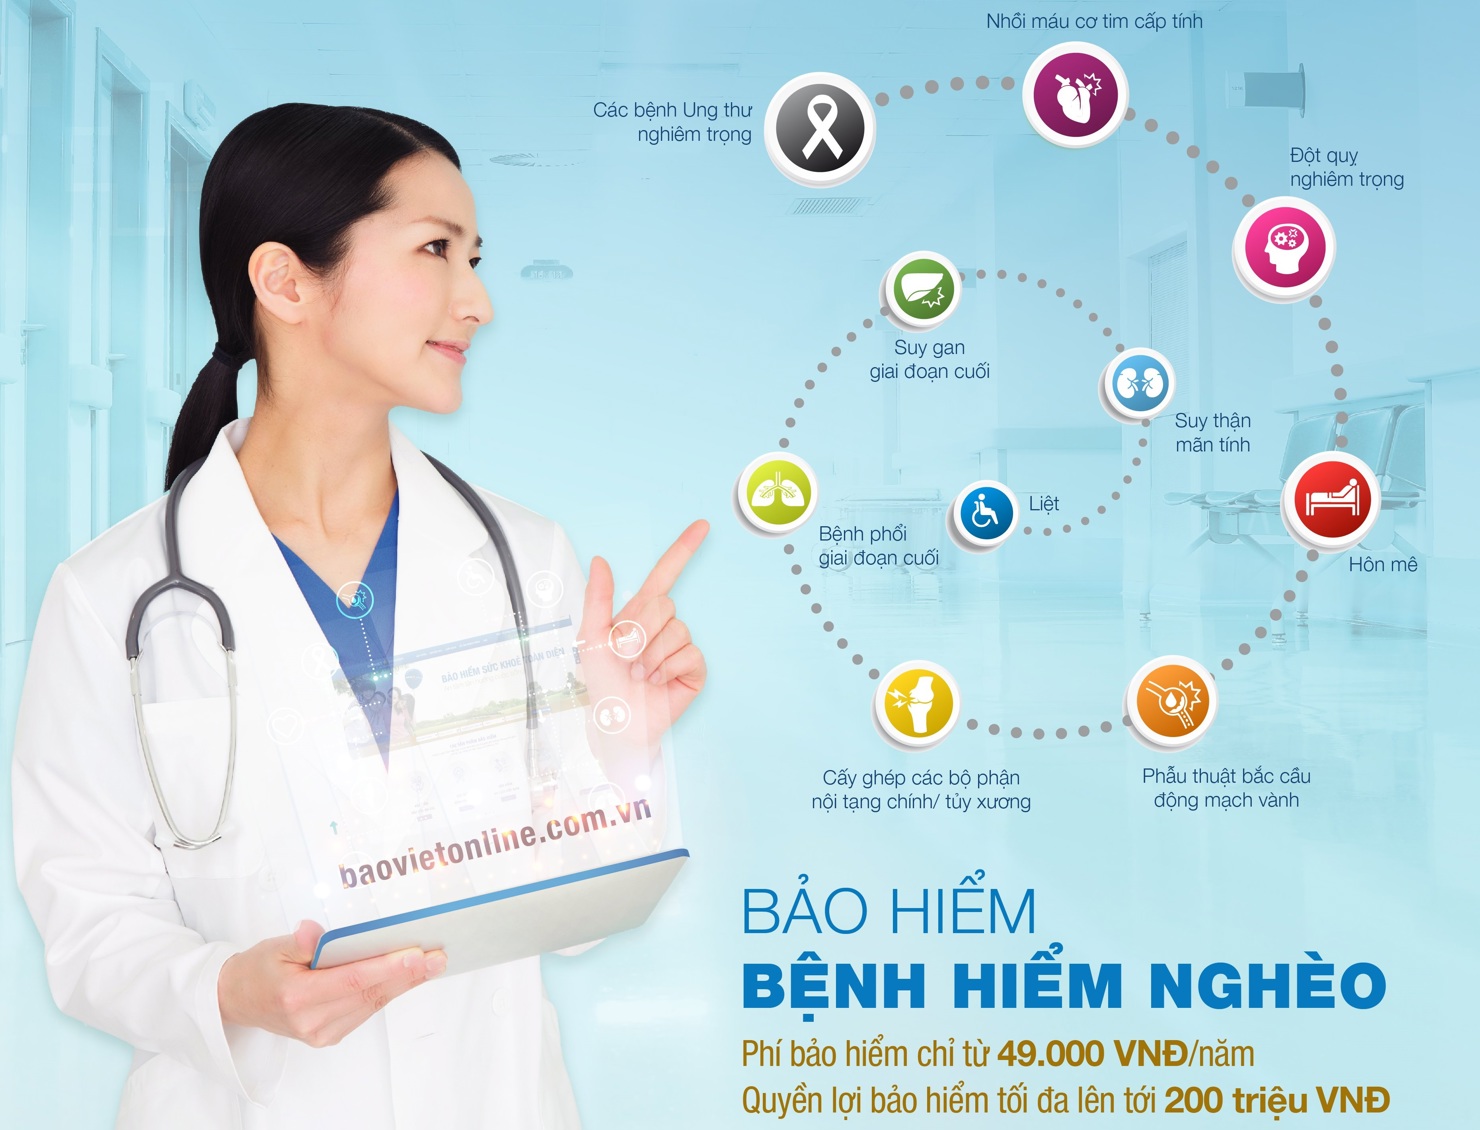 Từ tháng 5/2019, Bảo hiểm bệnh hiểm nghèo chính thức được triển khai tại Bảo hiểm Bảo Việt.